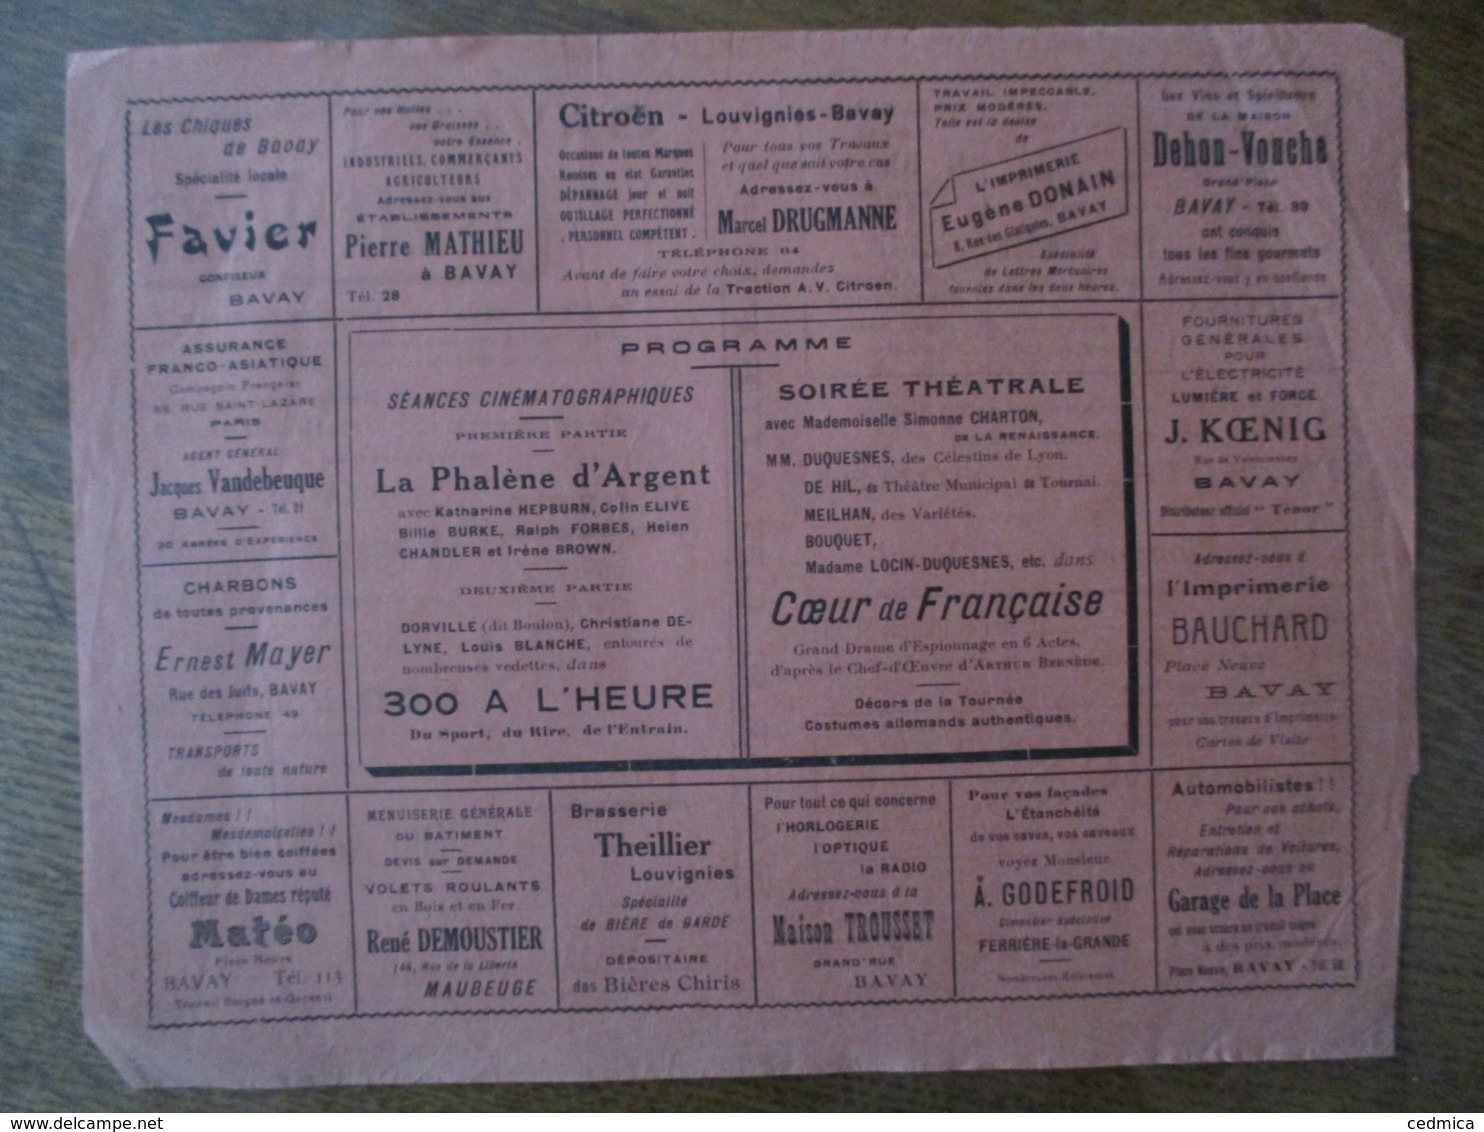 BAVAY CINEMA REXY 10 ET 11 NOVEMBRE 1937 LA PHALENE D'ARGENT ET THEÂTRE COEUR DE FRANCAISE DRAME D'ESPIONNAGE - Programmes